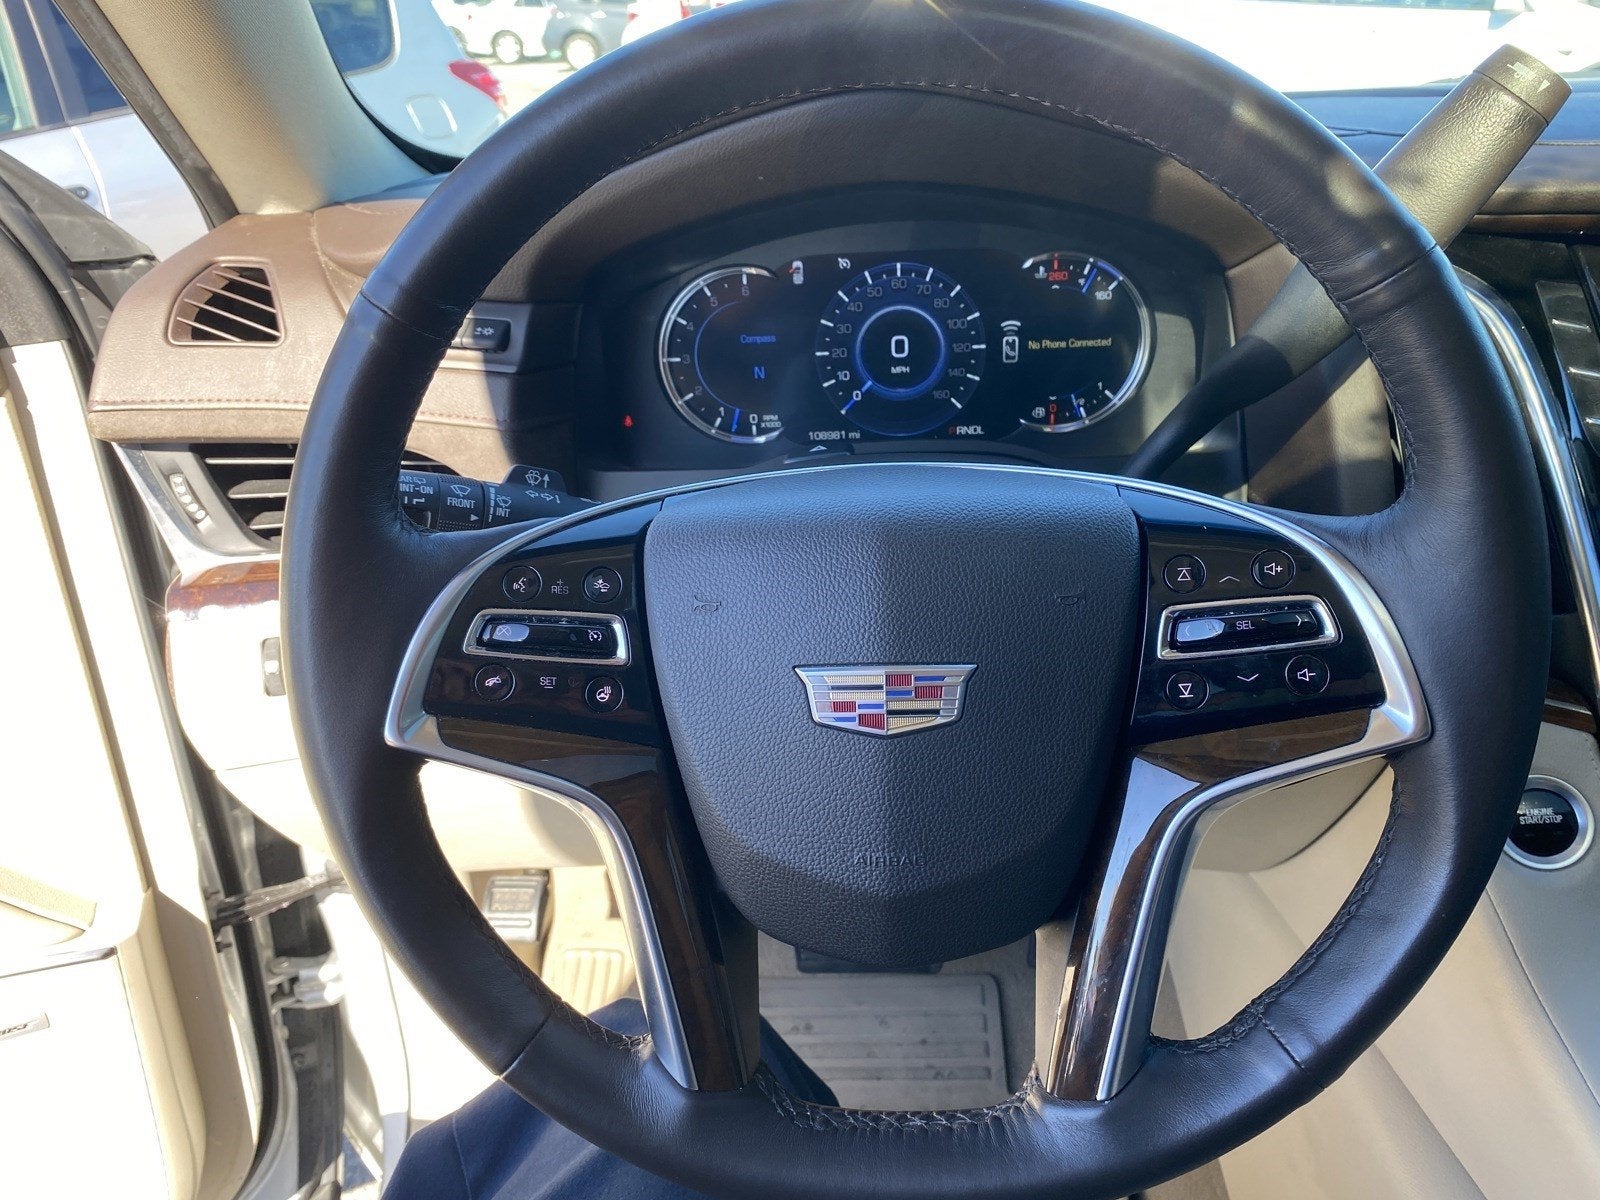 2017 Cadillac Escalade Luxury